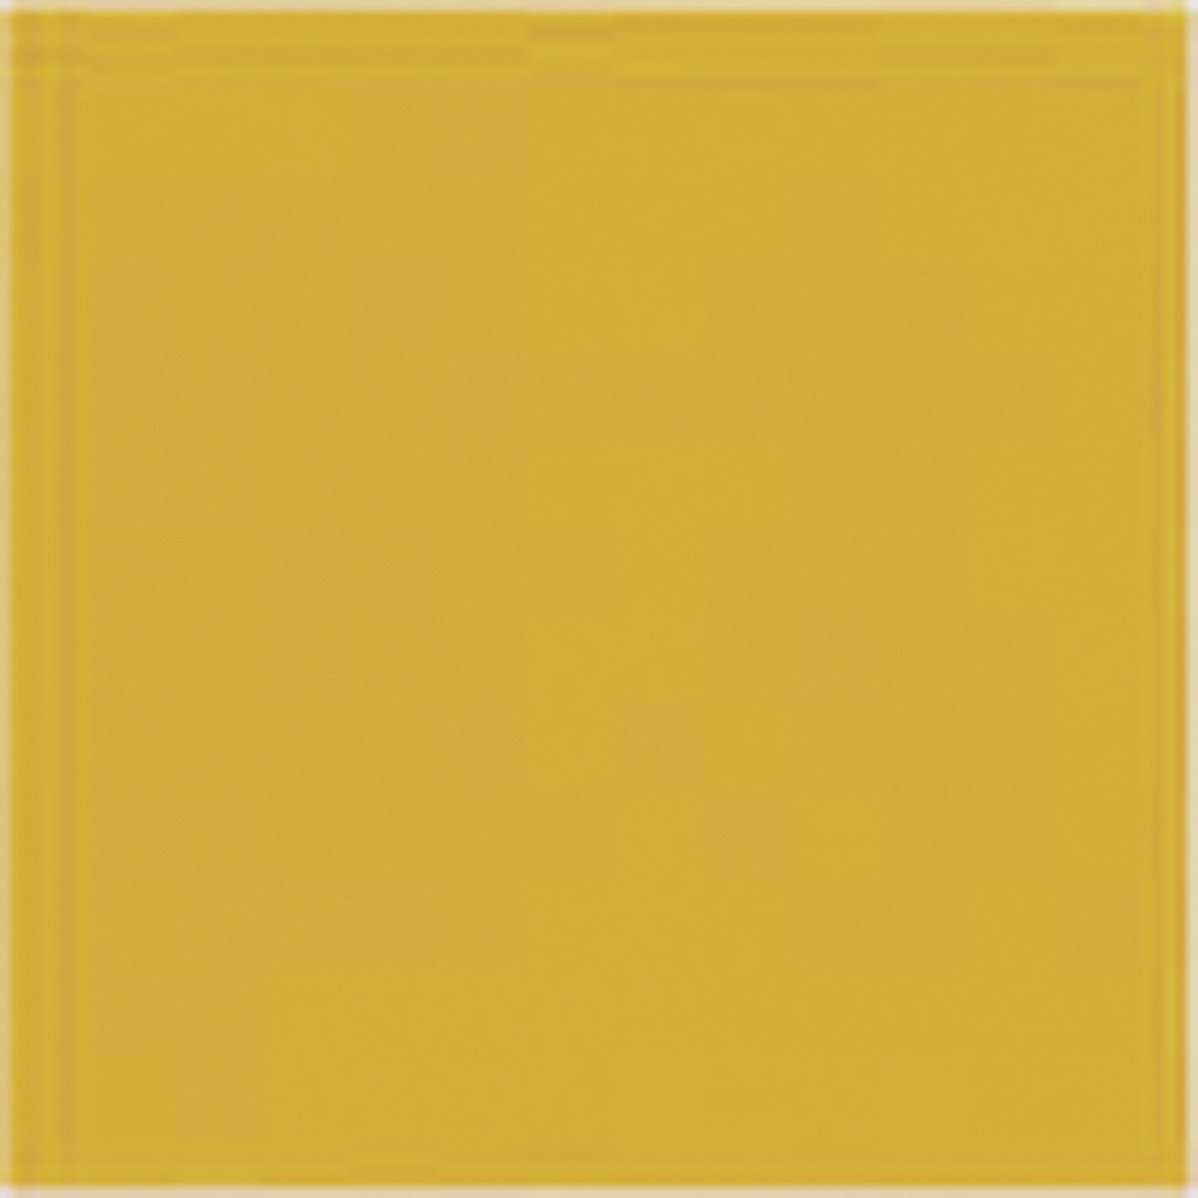 Керамическая плитка Veneto Sigma Naranja, цвет жёлтый, поверхность глазурованная, квадрат, 200x200